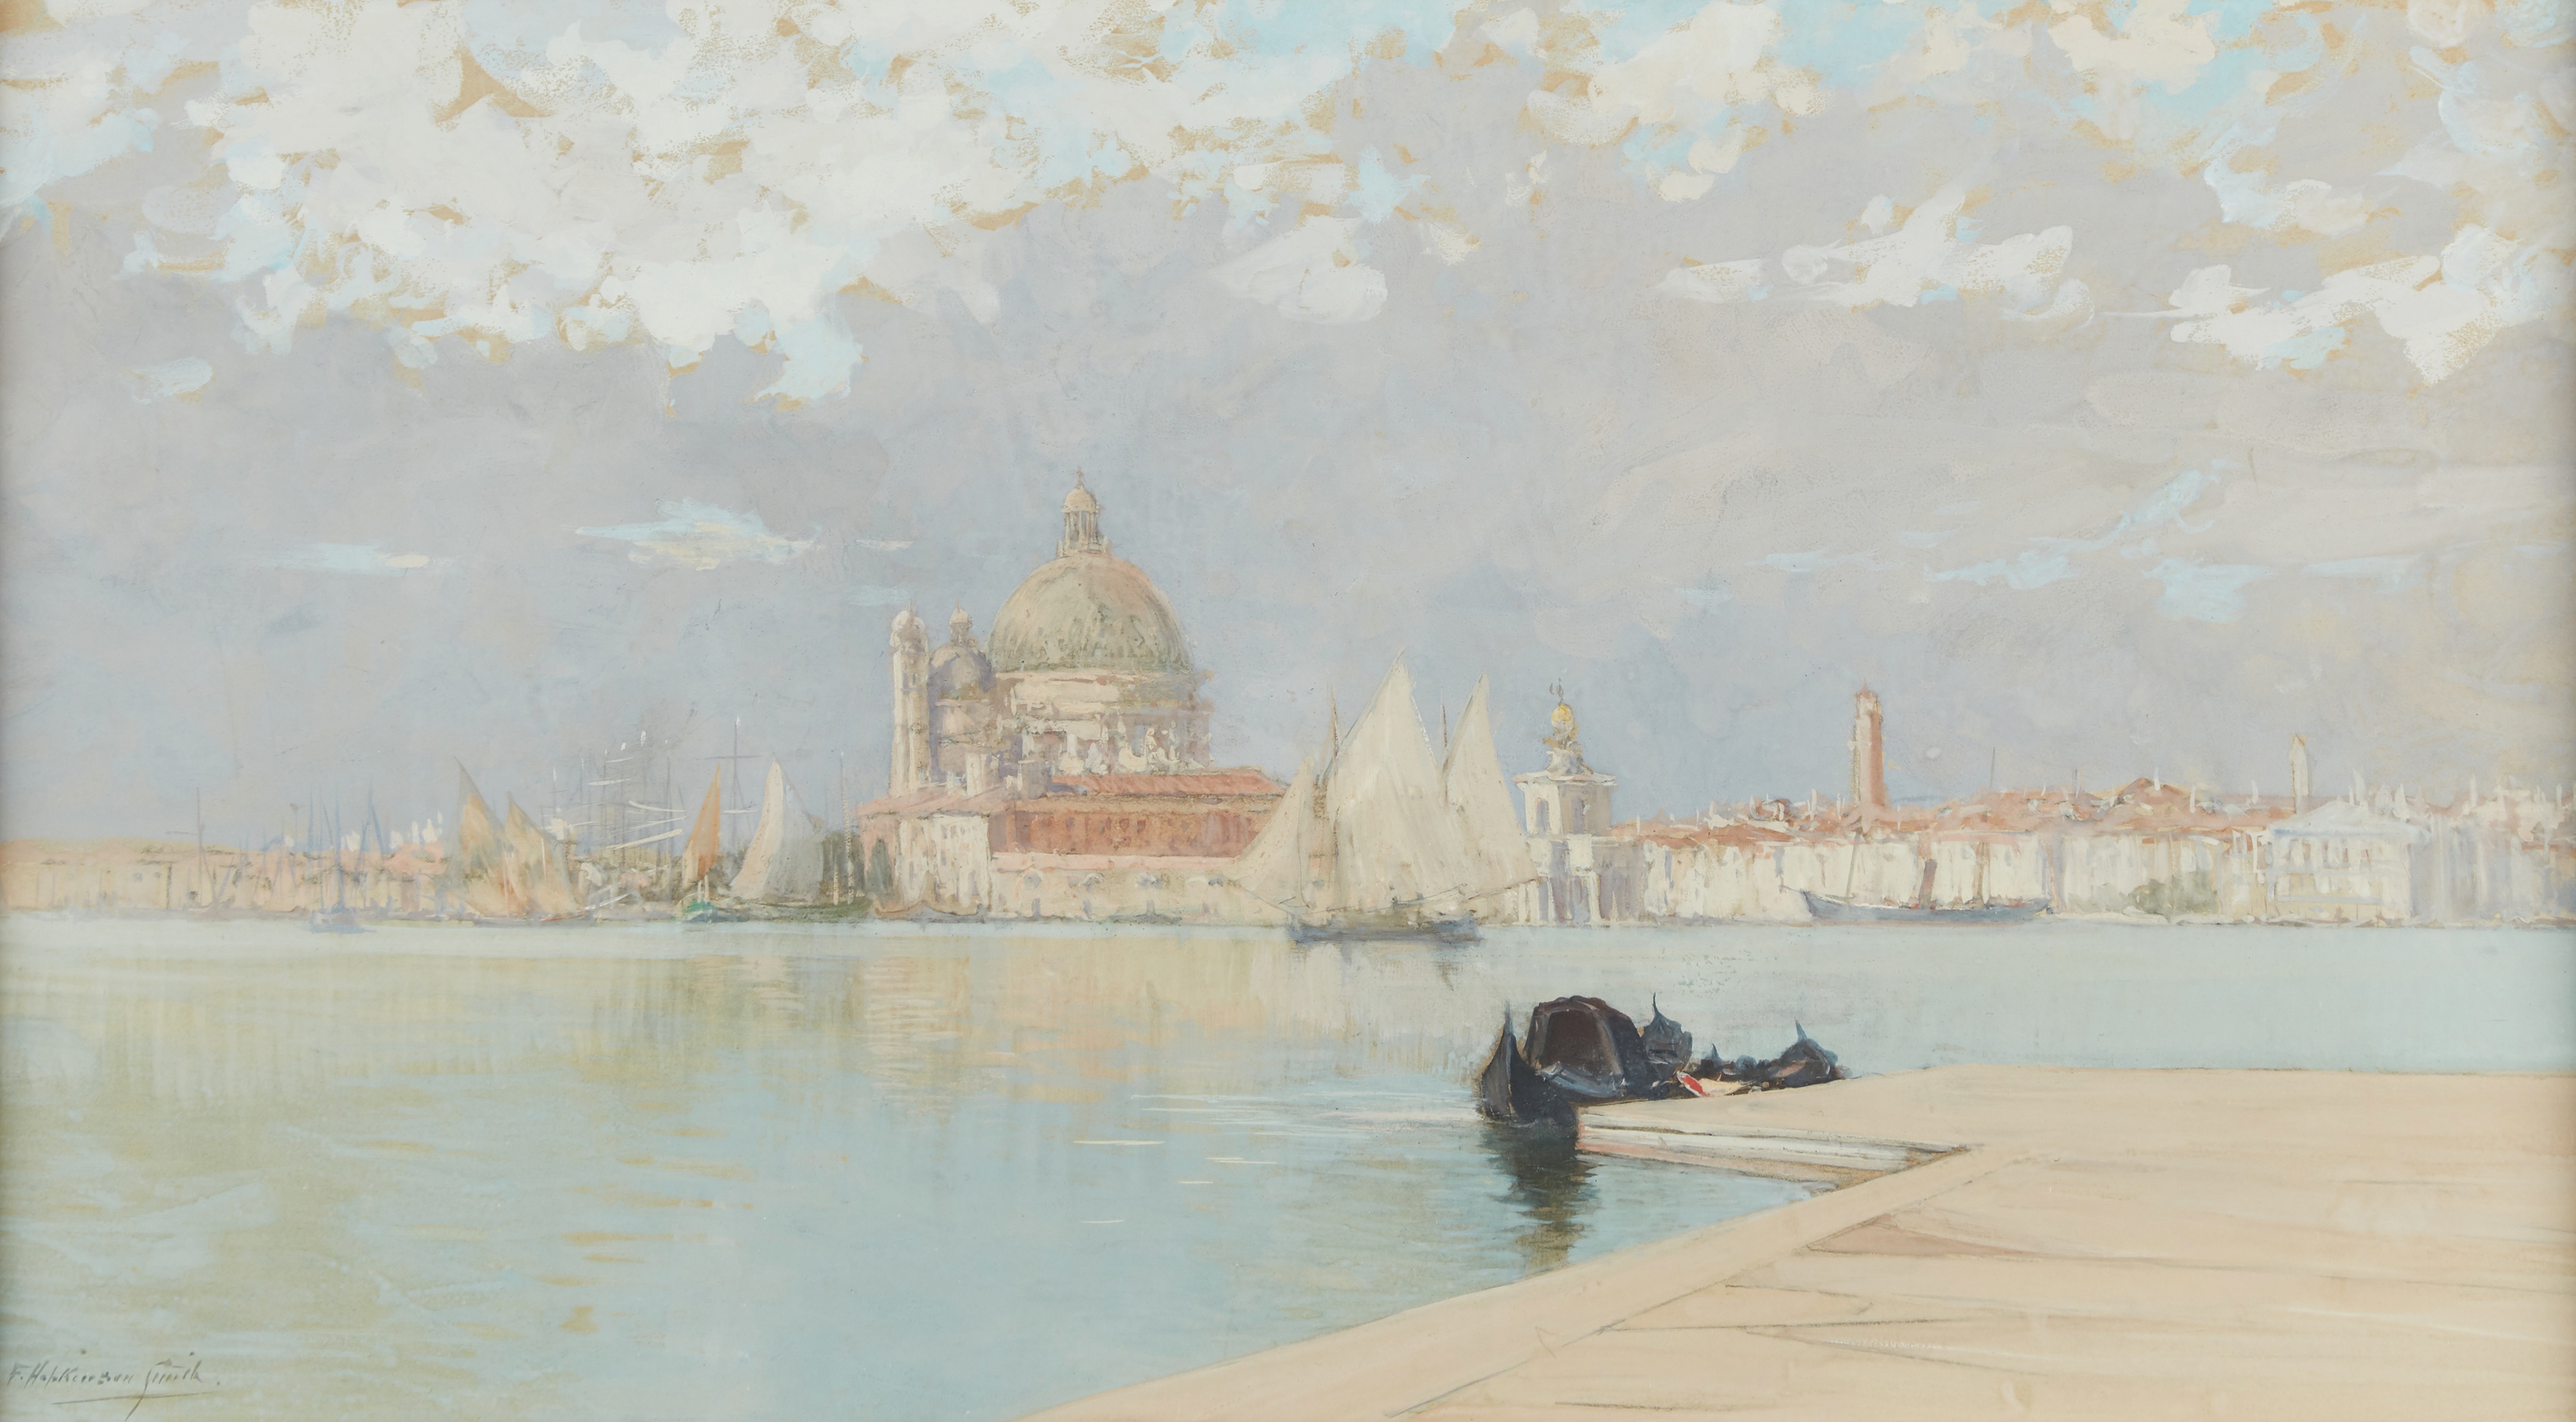 Venice by Francis Hopkinson Smith